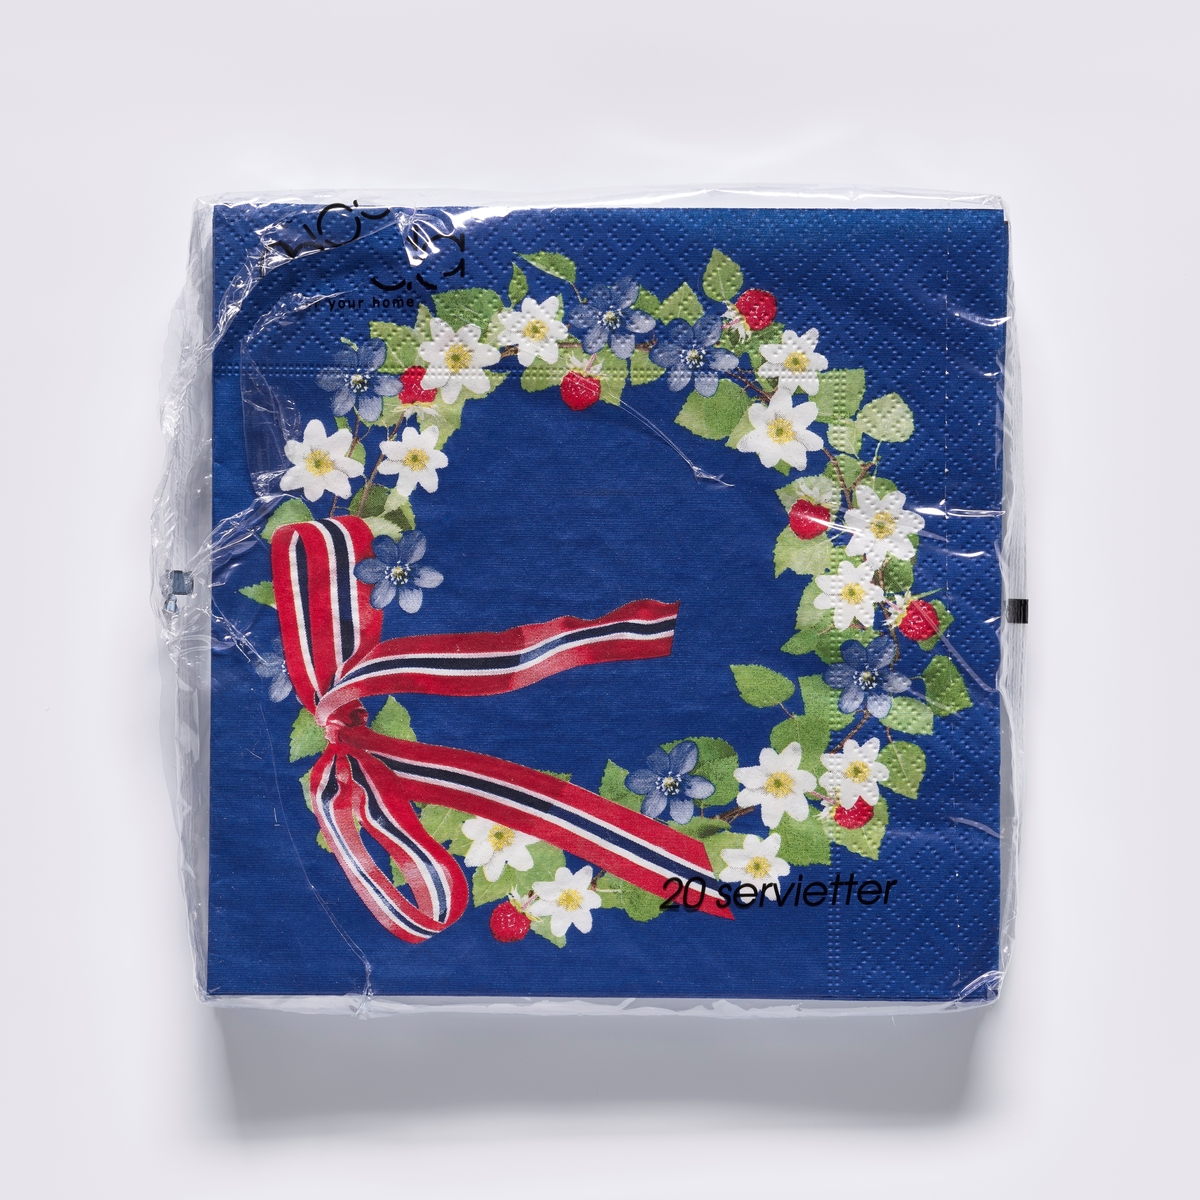 En blomsterkrans med blåveis, hvitveis og jordbær og en sløyfe med fargene til det norske flagget, rødt, hvit og blåt.